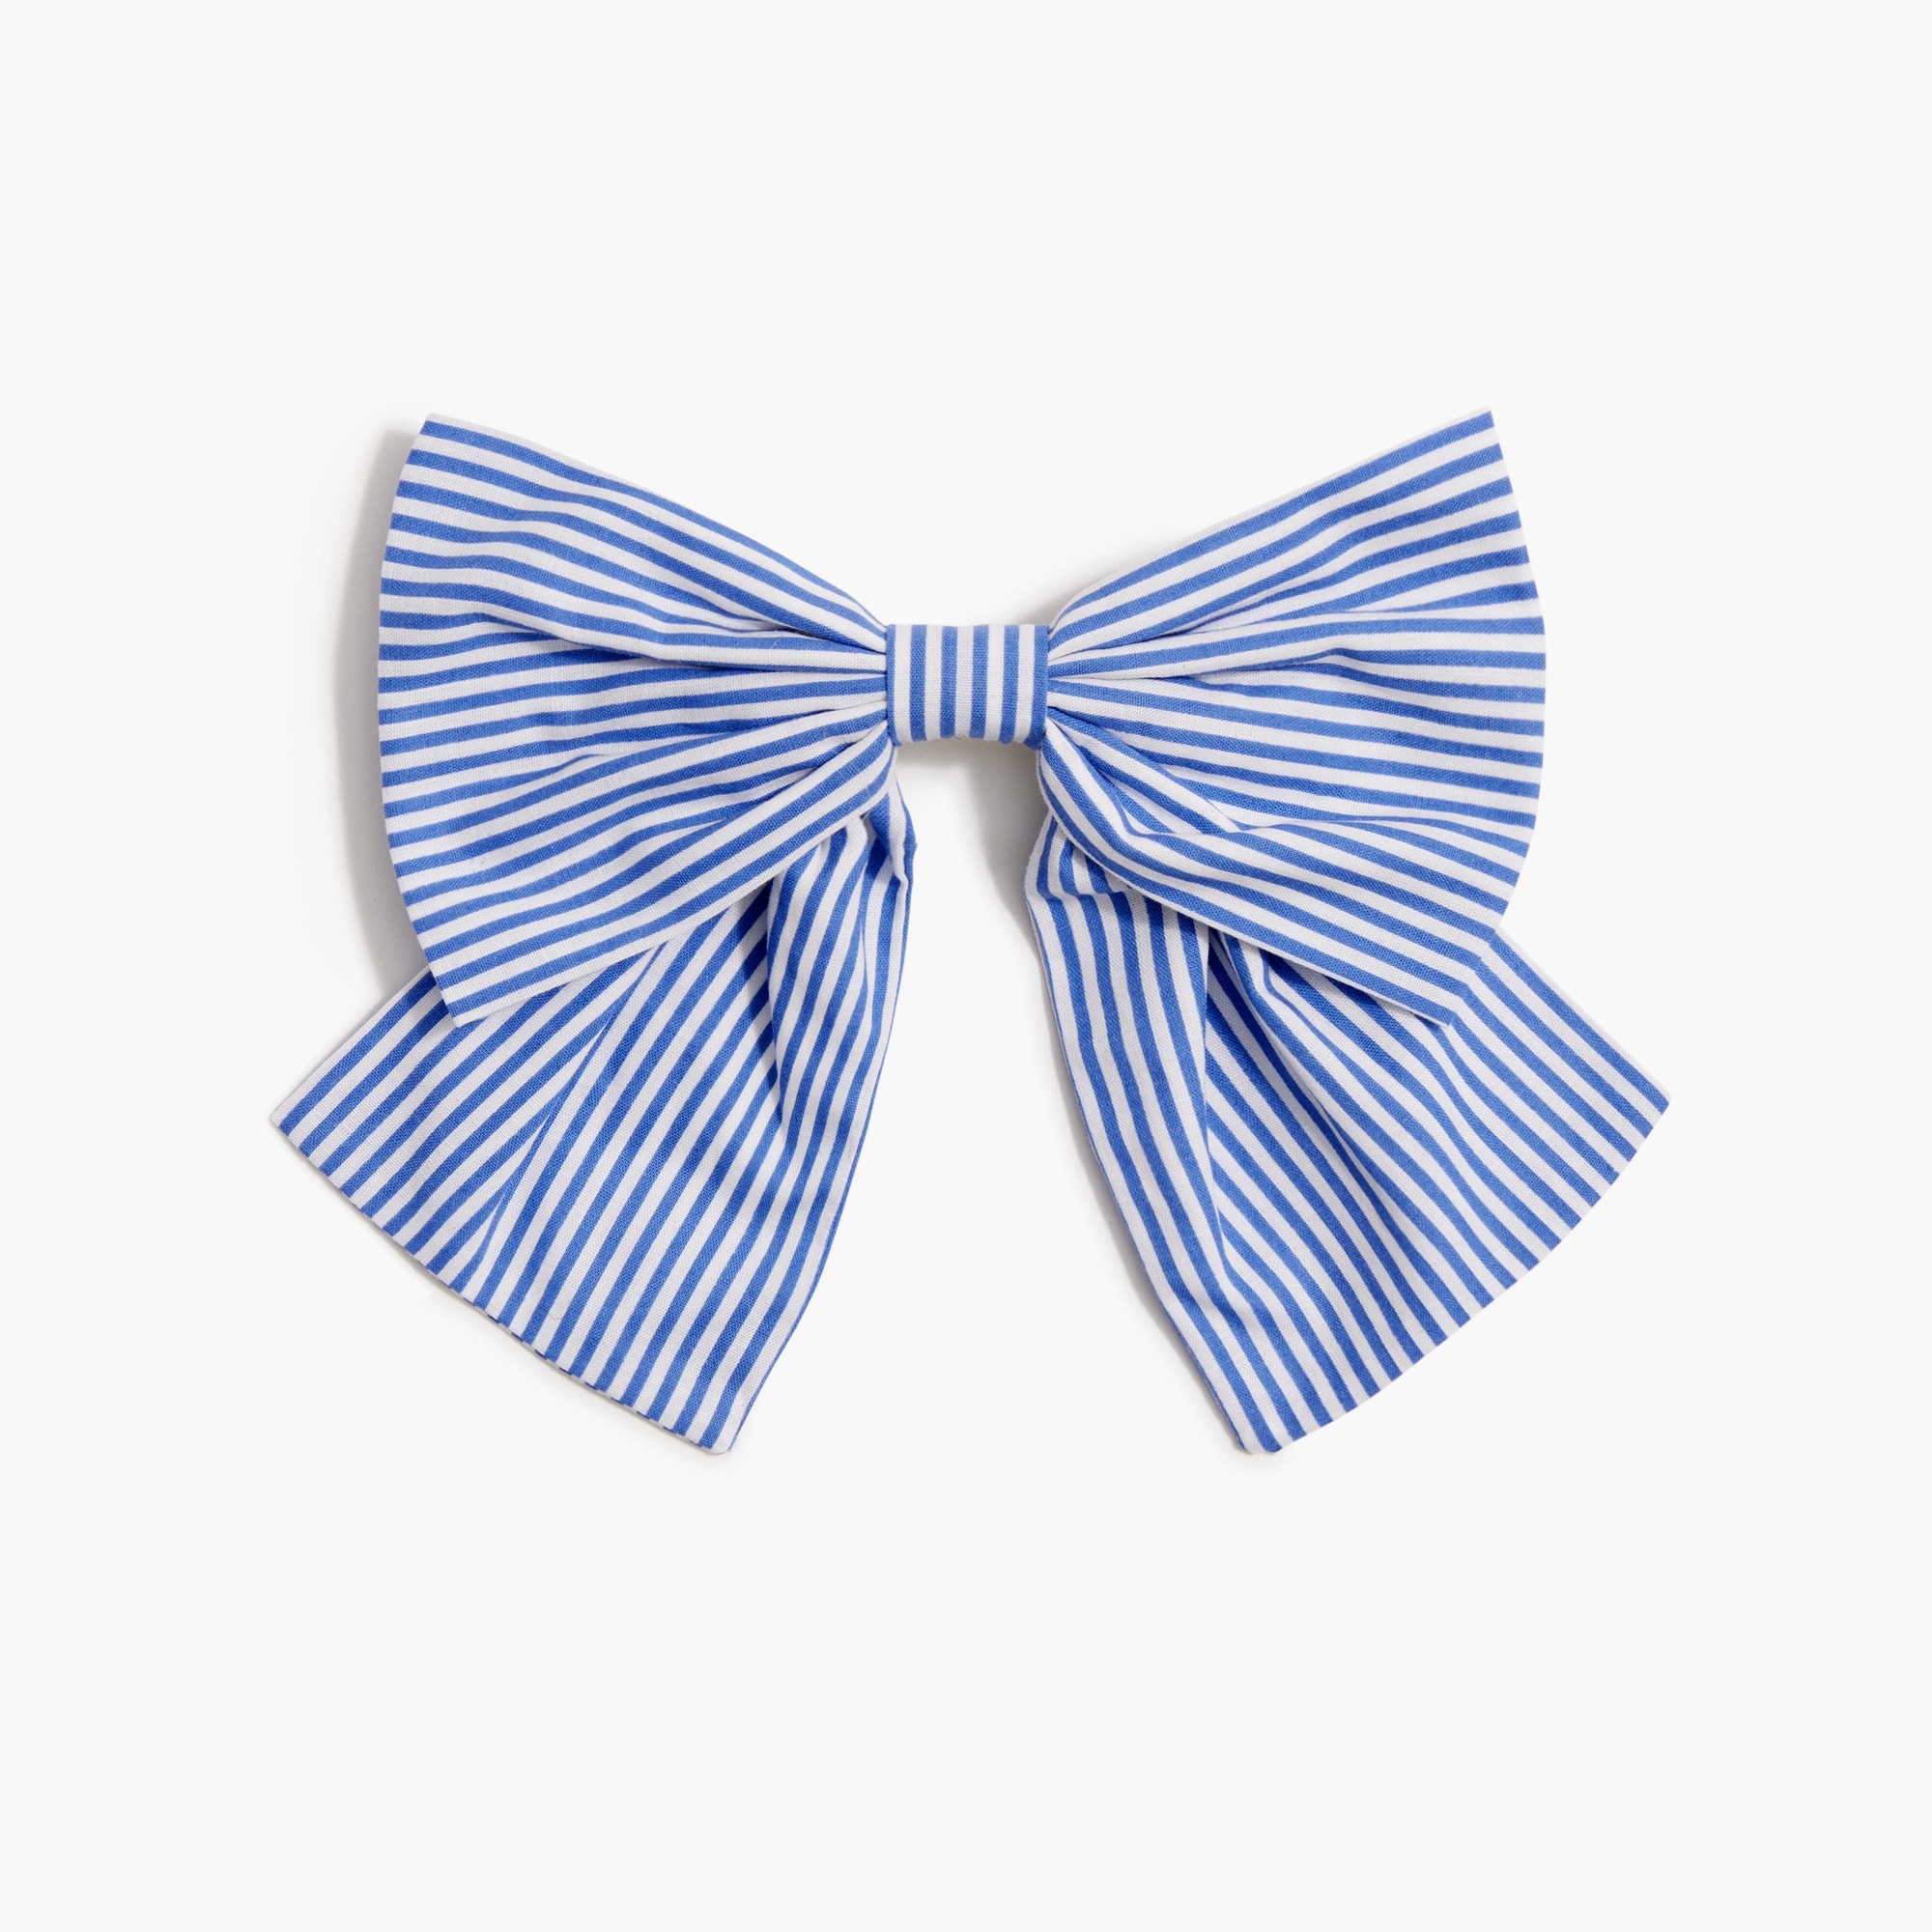  Striped bow hair barrette clip